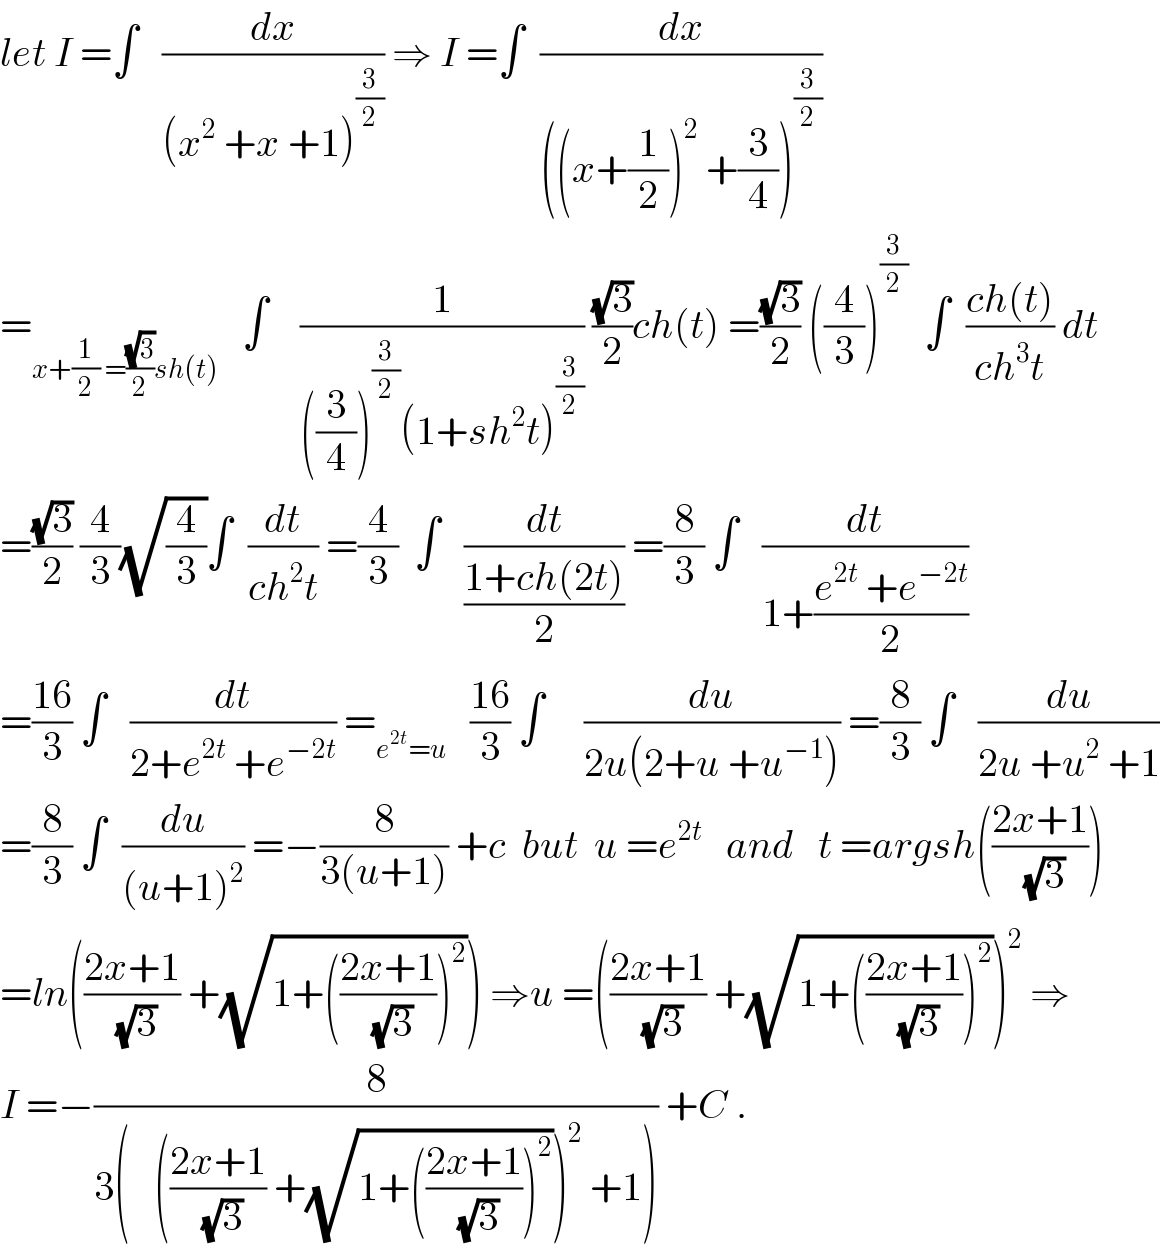 let I =∫   (dx/((x^2  +x +1)^(3/2) )) ⇒ I =∫  (dx/(((x+(1/2))^2  +(3/4))^(3/2) ))  =_(x+(1/2) =((√3)/2)sh(t))    ∫    (1/(((3/4))^(3/2) (1+sh^2 t)^(3/2) )) ((√3)/2)ch(t) =((√3)/2) ((4/3))^(3/2)   ∫  ((ch(t))/(ch^3 t)) dt  =((√3)/2) (4/3)(√(4/3))∫  (dt/(ch^2 t)) =(4/3)  ∫   (dt/((1+ch(2t))/2)) =(8/3) ∫   (dt/(1+((e^(2t)  +e^(−2t) )/2)))  =((16)/3) ∫   (dt/(2+e^(2t)  +e^(−2t) )) =_(e^(2t) =u)    ((16)/3) ∫     (du/(2u(2+u +u^(−1) ))) =(8/3) ∫   (du/(2u +u^2  +1))  =(8/3) ∫  (du/((u+1)^2 )) =−(8/(3(u+1))) +c  but  u =e^(2t)    and   t =argsh(((2x+1)/(√3)))  =ln(((2x+1)/(√3)) +(√(1+(((2x+1)/(√3)))^2 ))) ⇒u =(((2x+1)/(√3)) +(√(1+(((2x+1)/(√3)))^2 )))^2  ⇒  I =−(8/(3(   (((2x+1)/(√3)) +(√(1+(((2x+1)/(√3)))^2 )))^2  +1))) +C .  